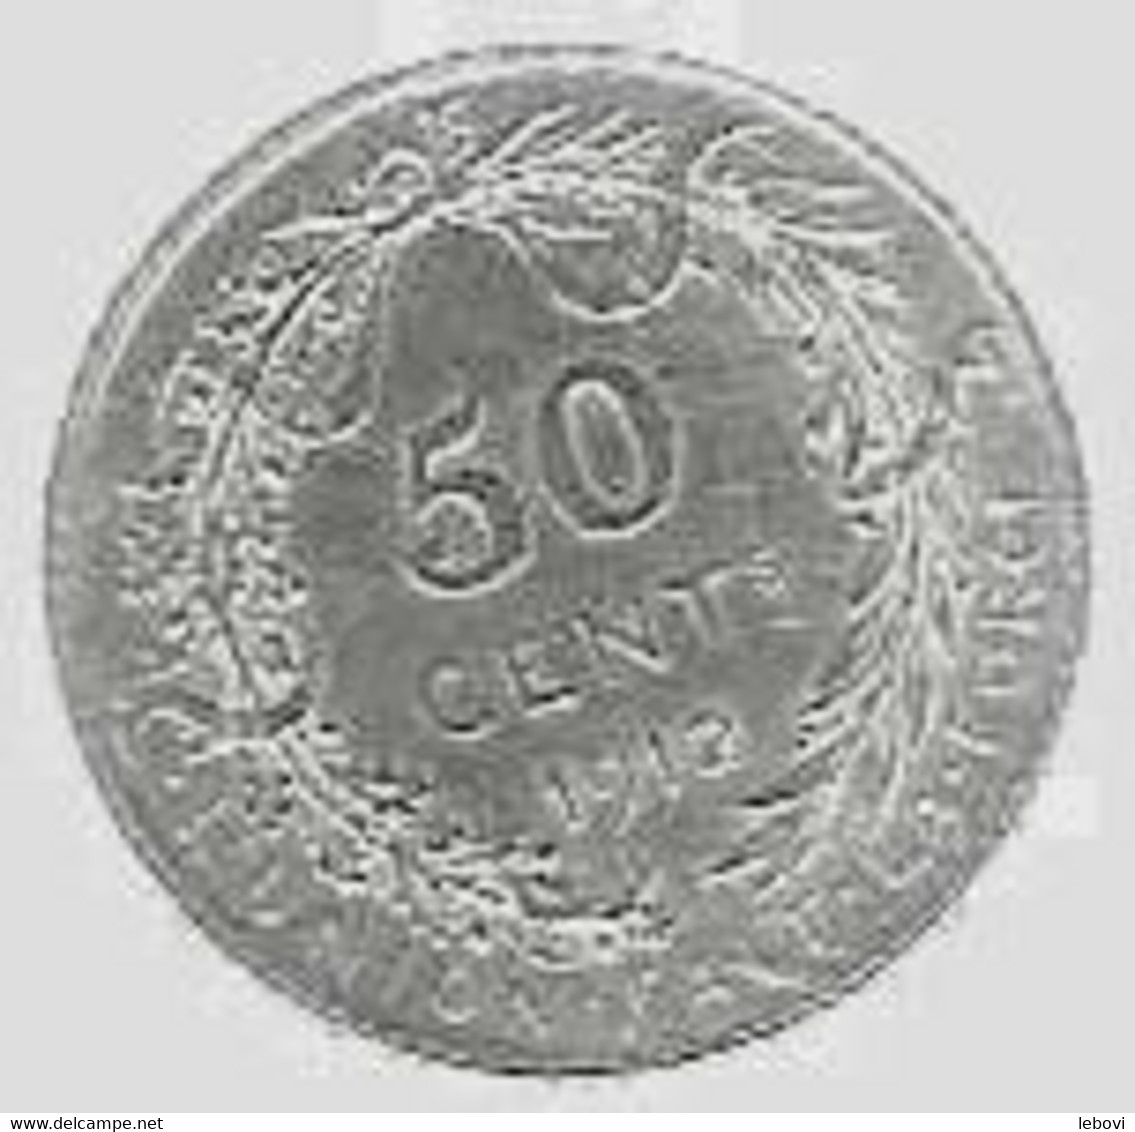 ALBERT I - 50 Centimes 1912 FR - 50 Centimes